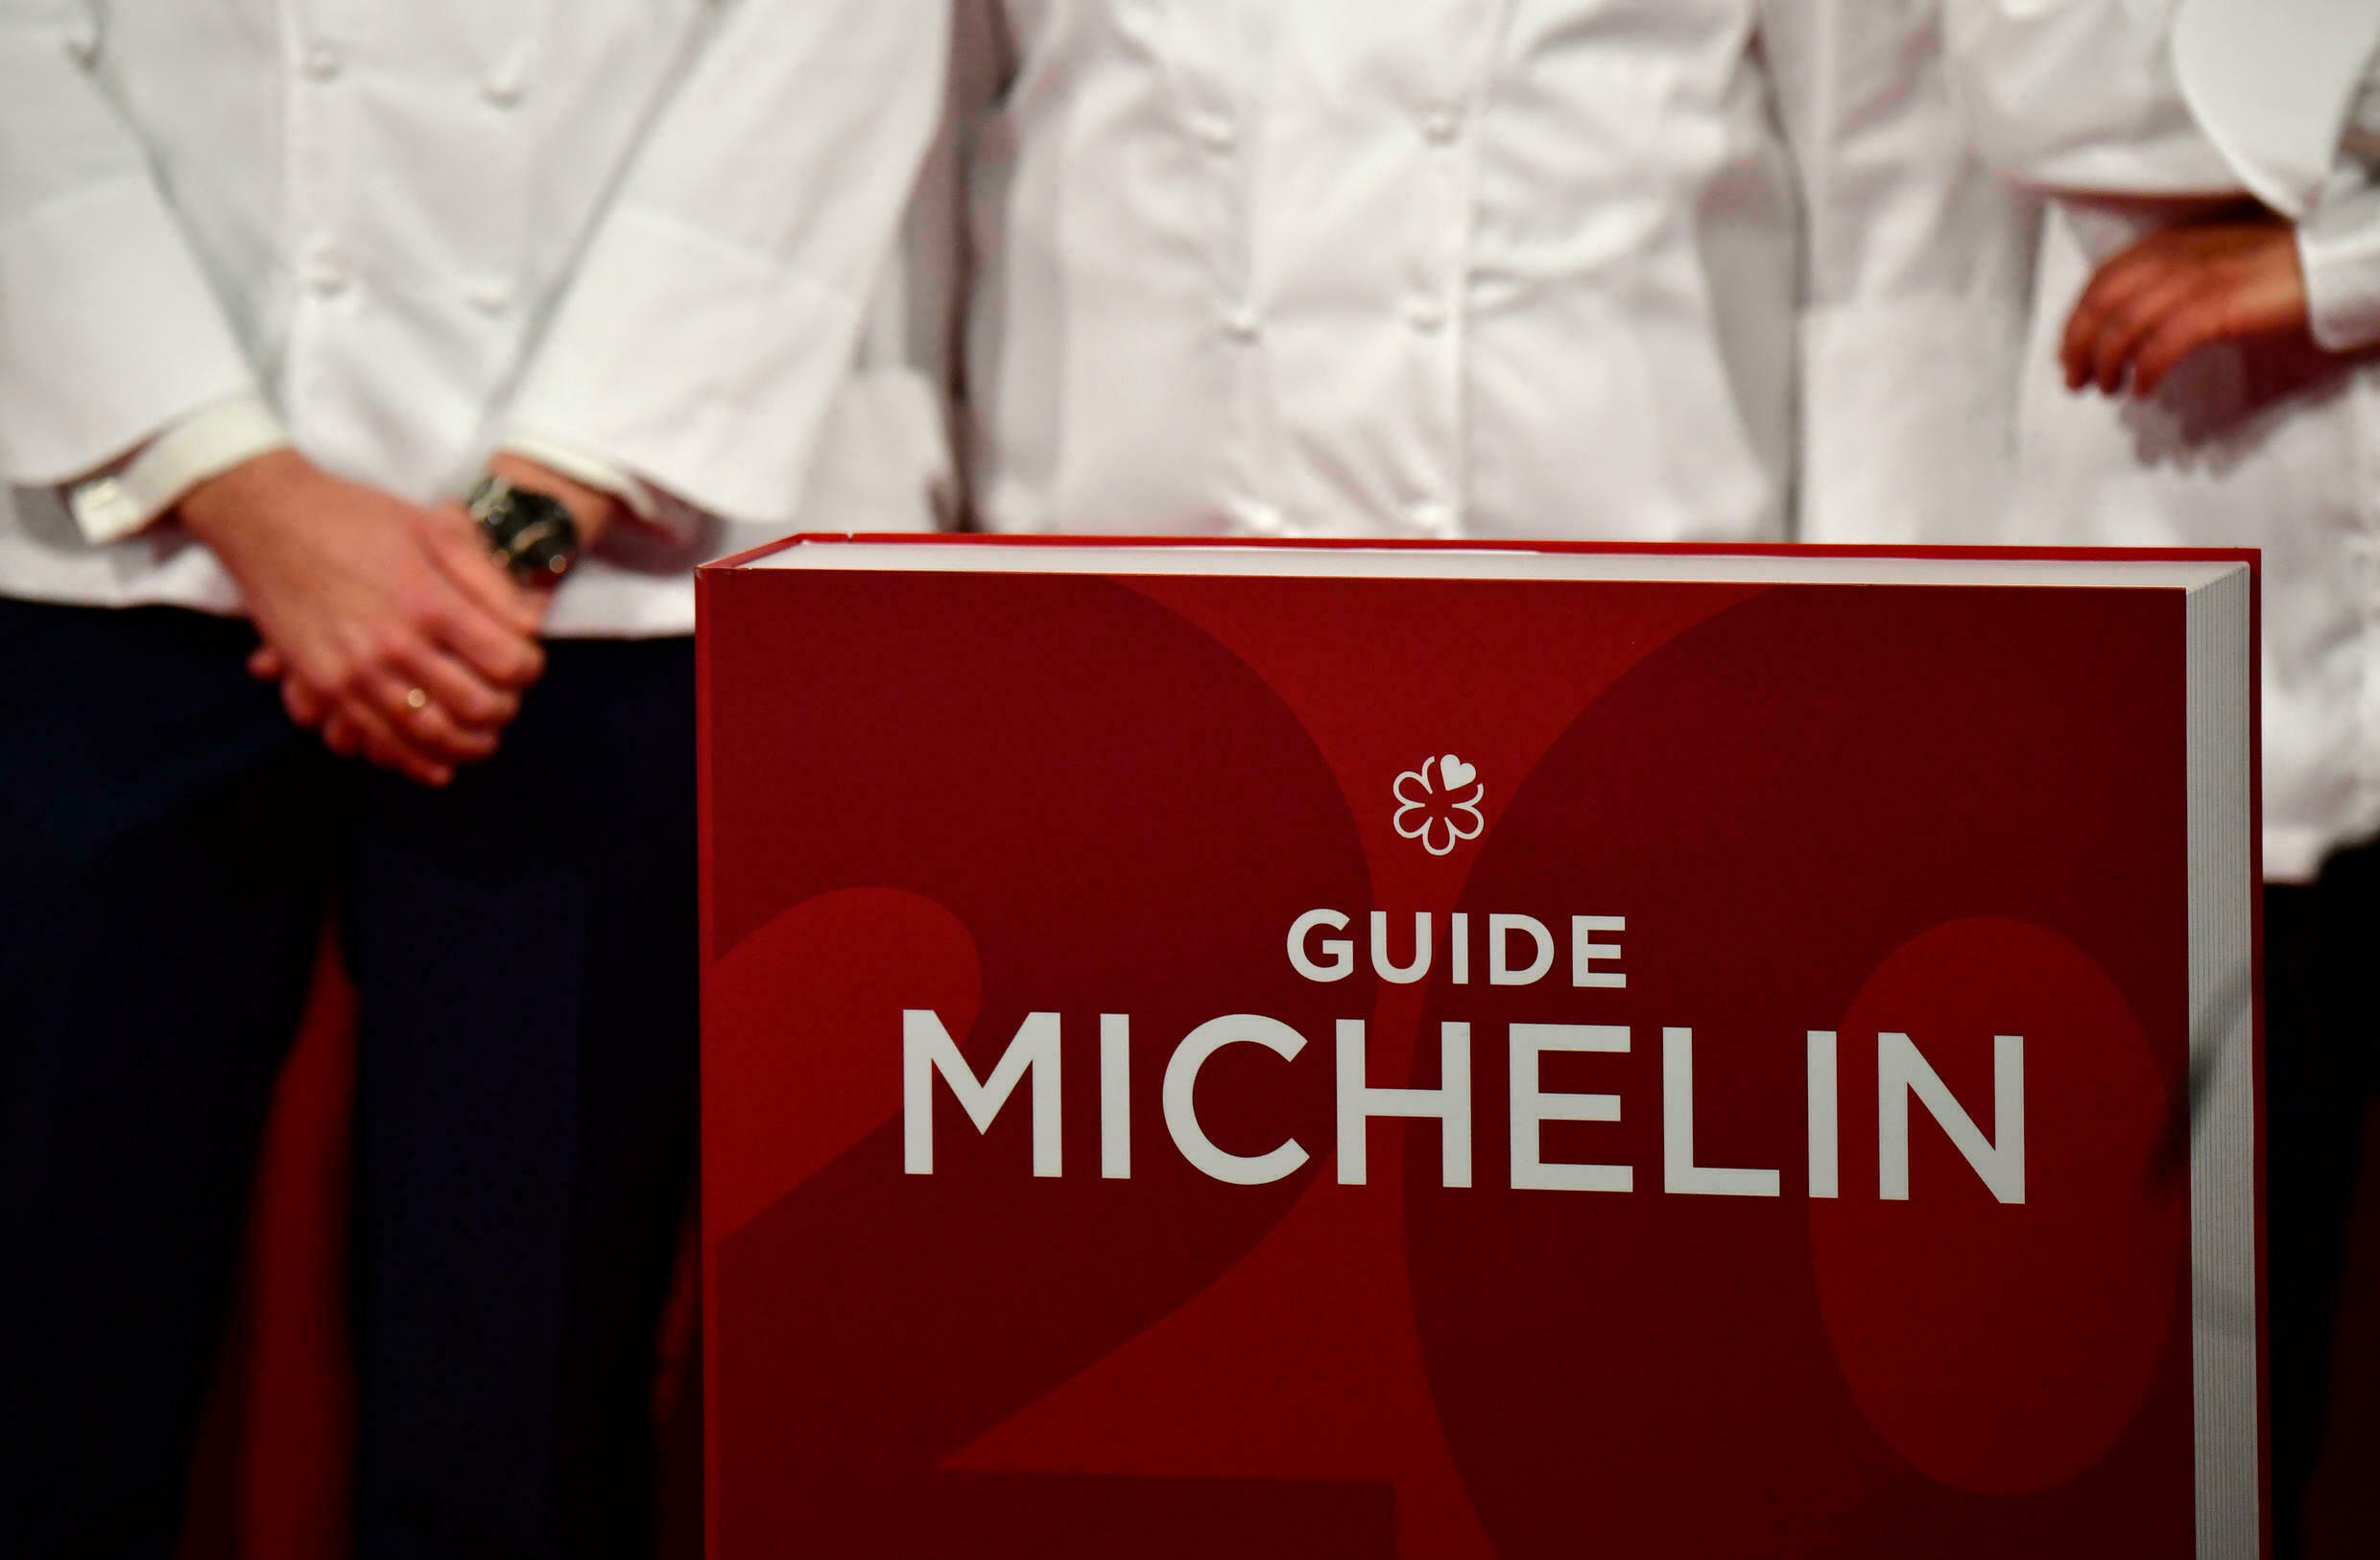 Российские рестораны впервые получили «Мишлен». Что это значит для индустрии?